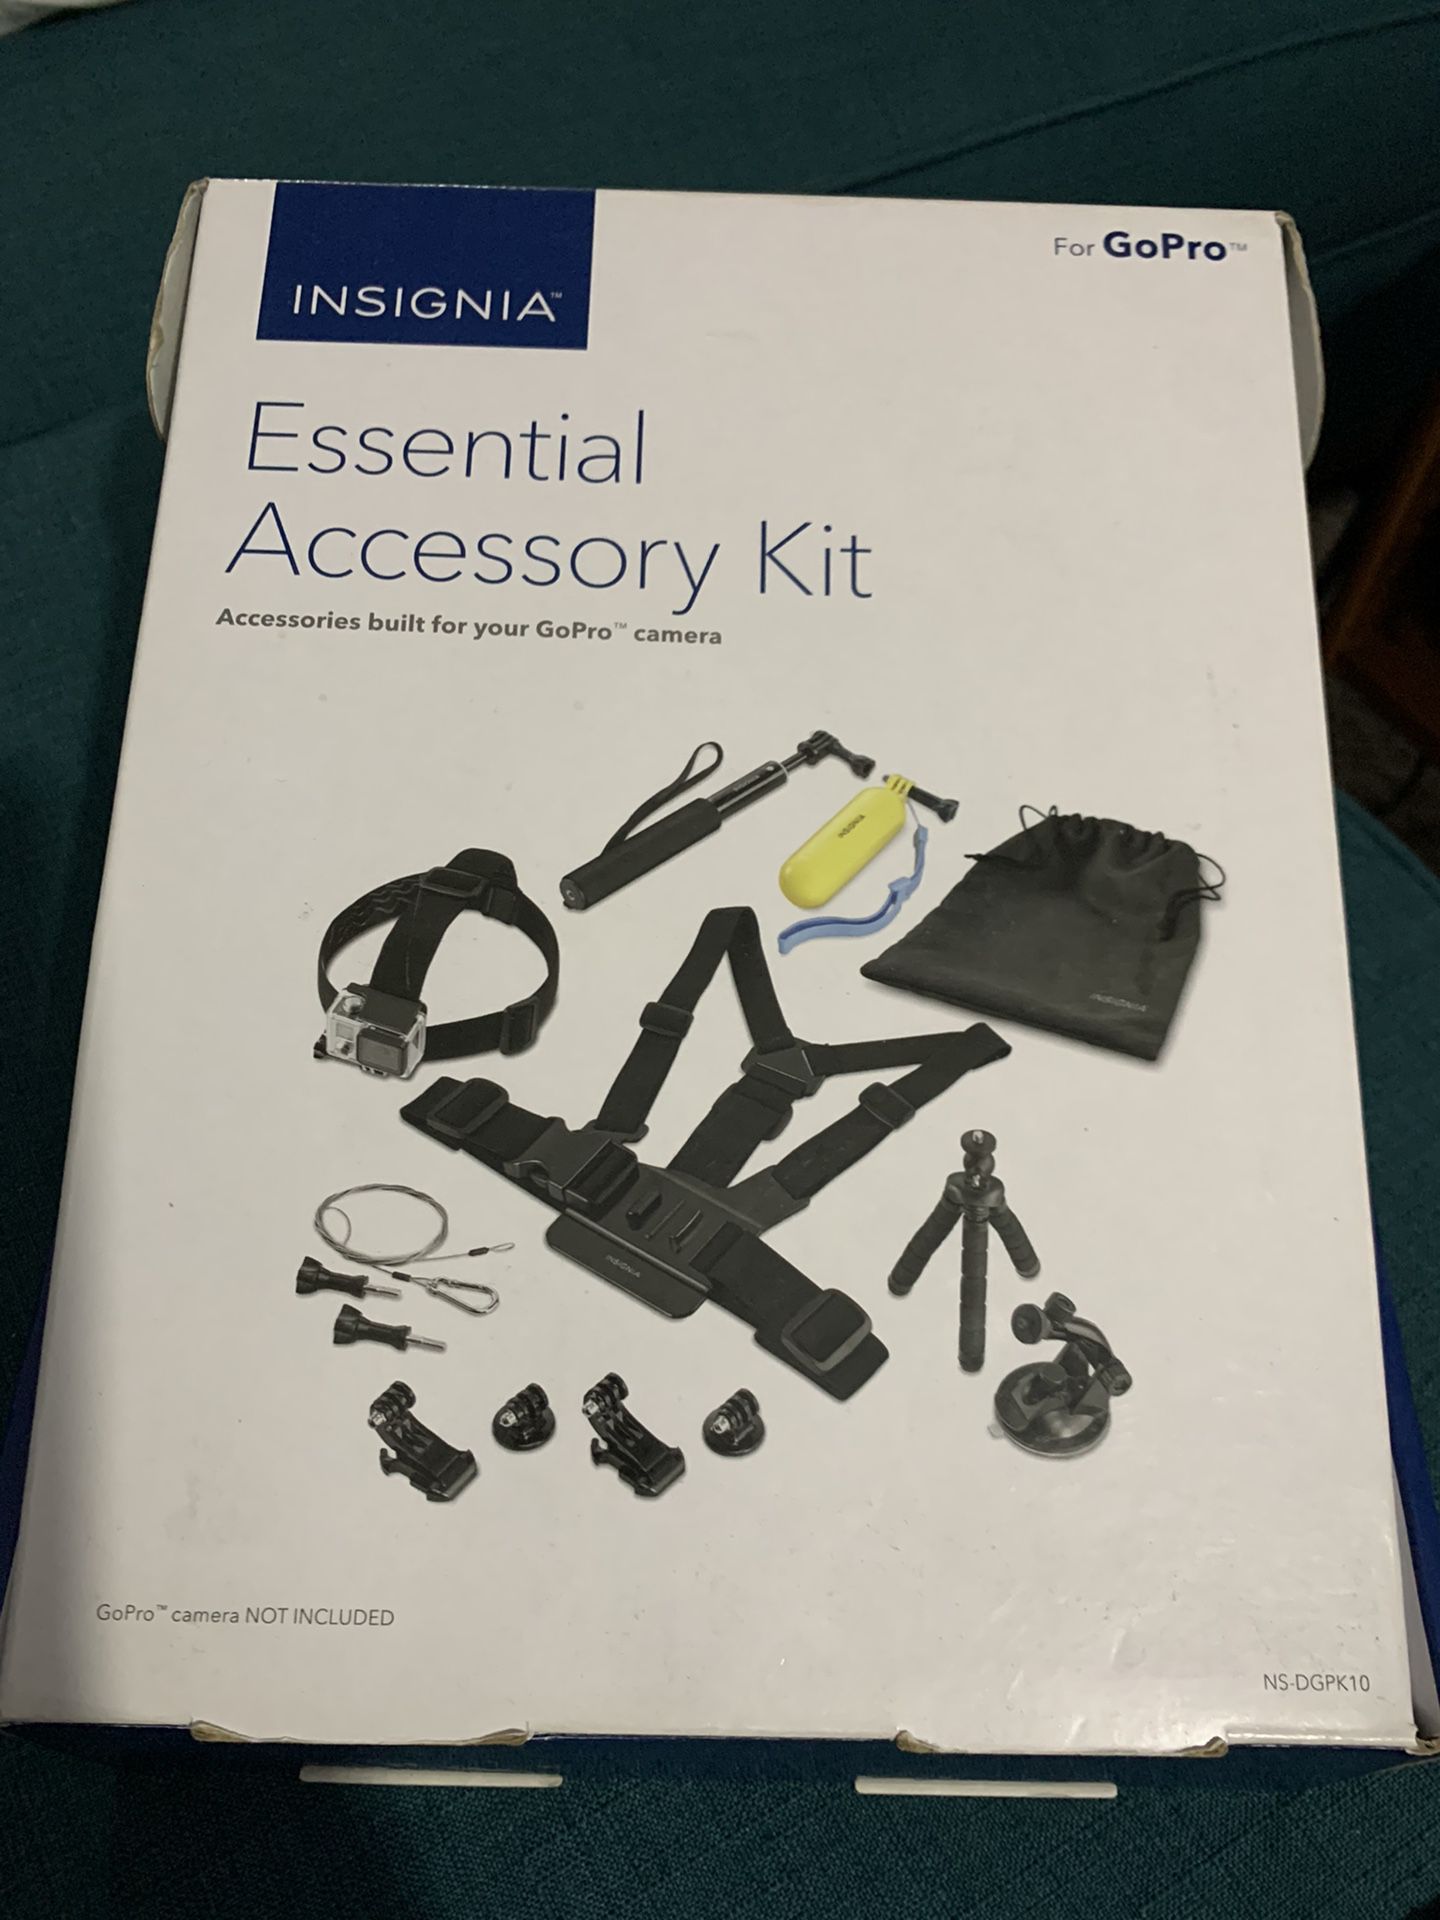 Go Pro accessory kit